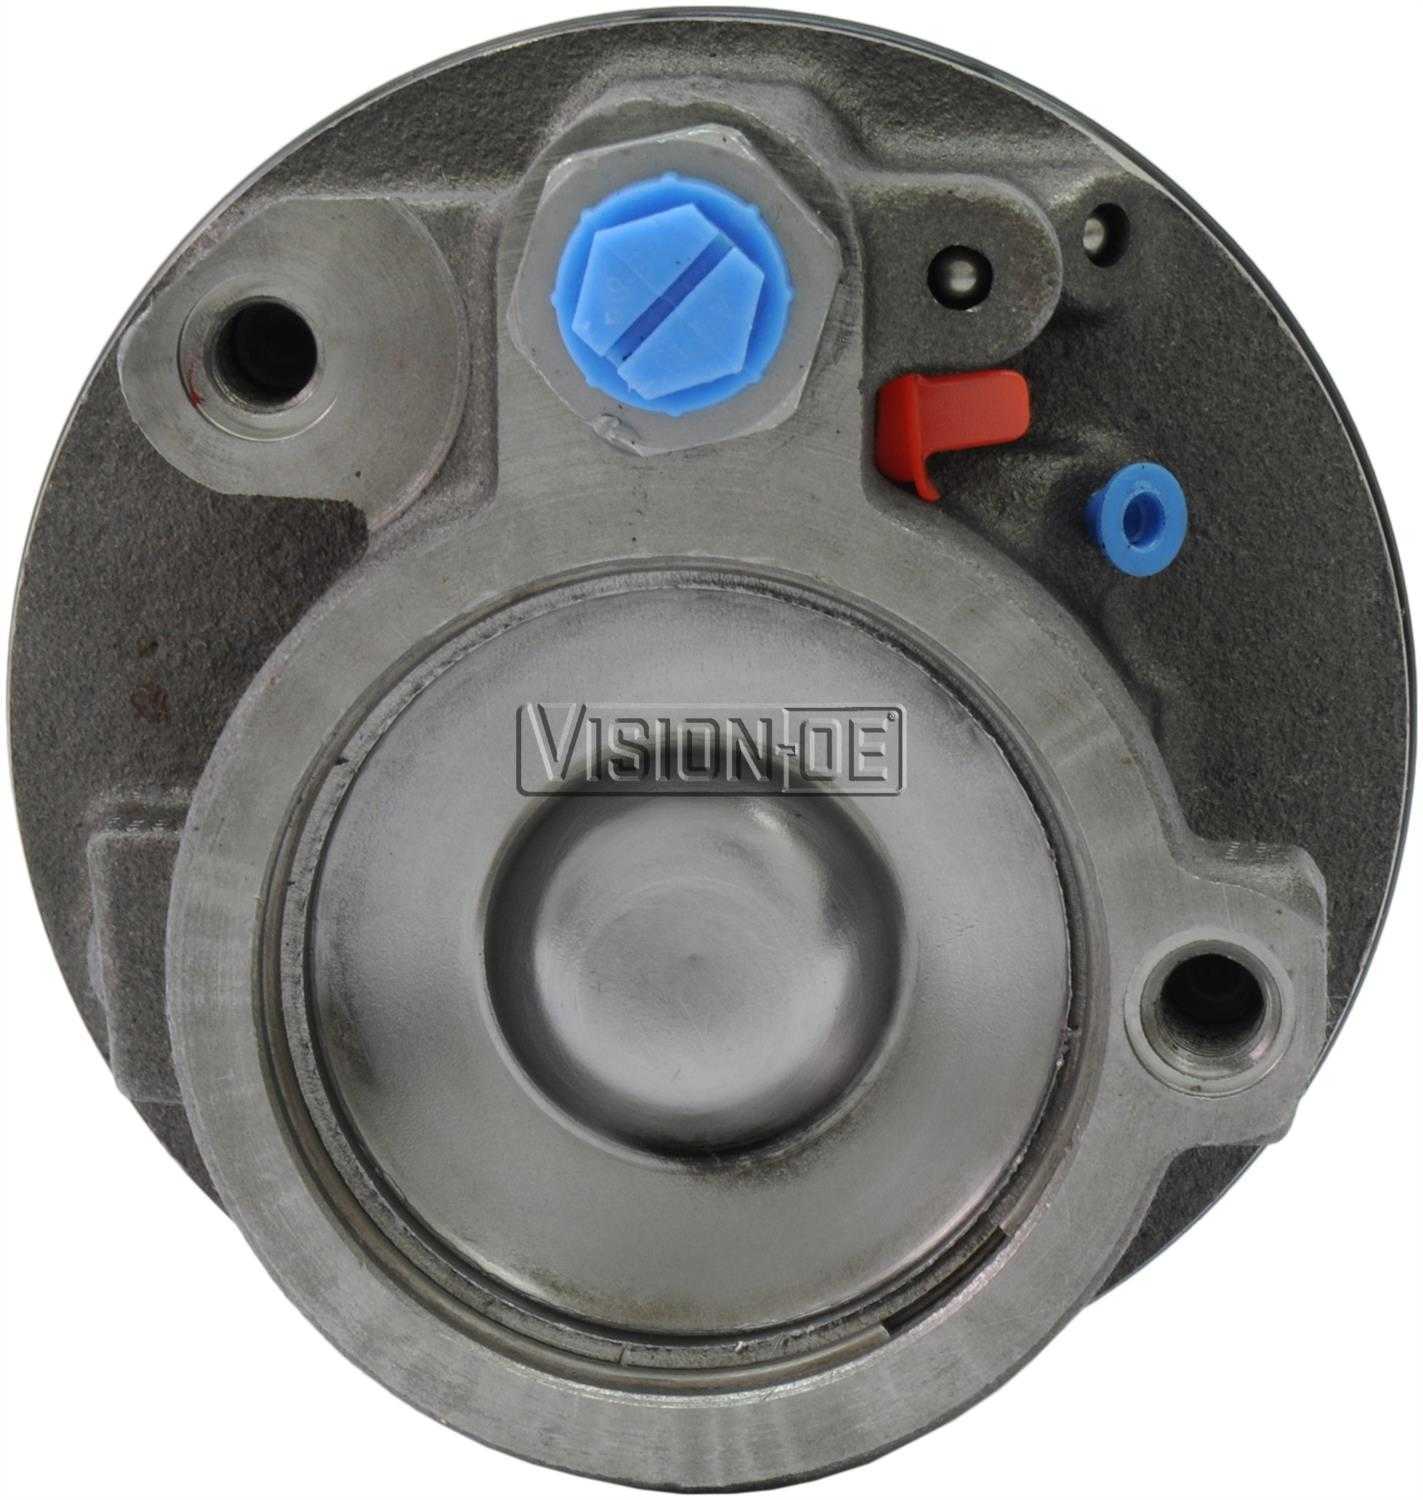 VISION-OE - Reman Power Steering Pump - VOE 731-0125